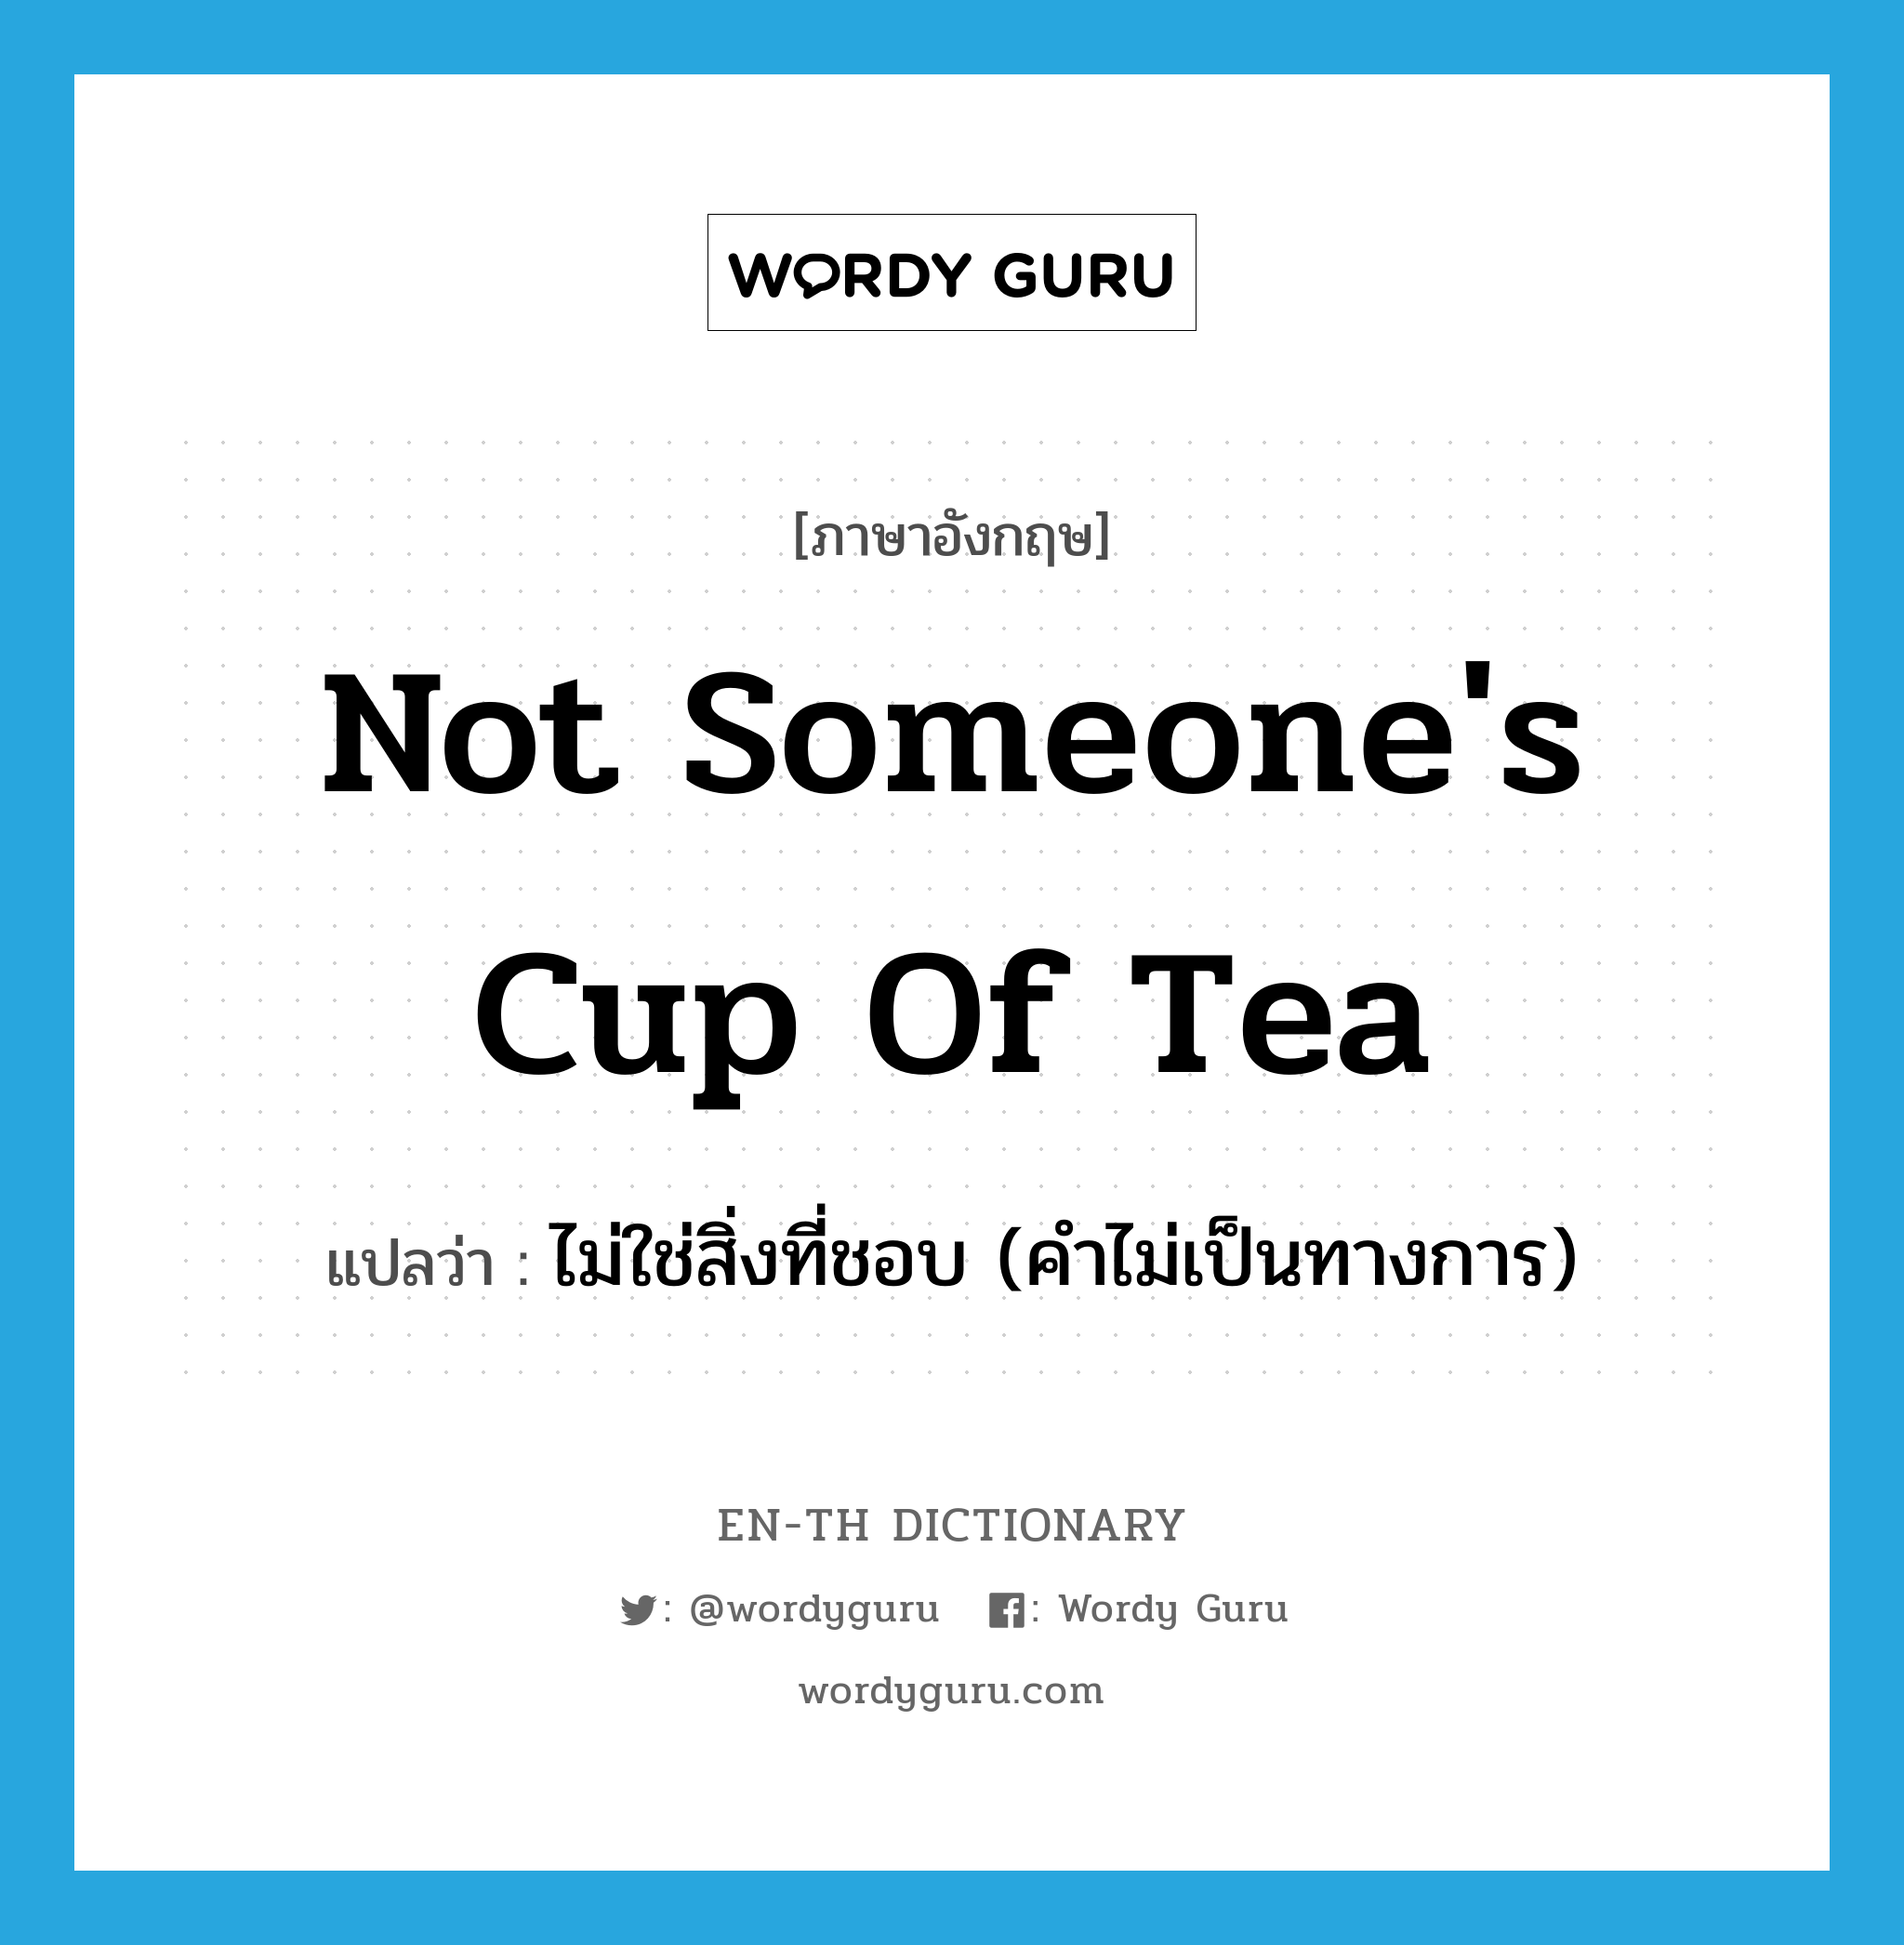 ไม่ใช่สิ่งที่ชอบ (คำไม่เป็นทางการ) ภาษาอังกฤษ?, คำศัพท์ภาษาอังกฤษ ไม่ใช่สิ่งที่ชอบ (คำไม่เป็นทางการ) แปลว่า not someone's cup of tea ประเภท IDM หมวด IDM